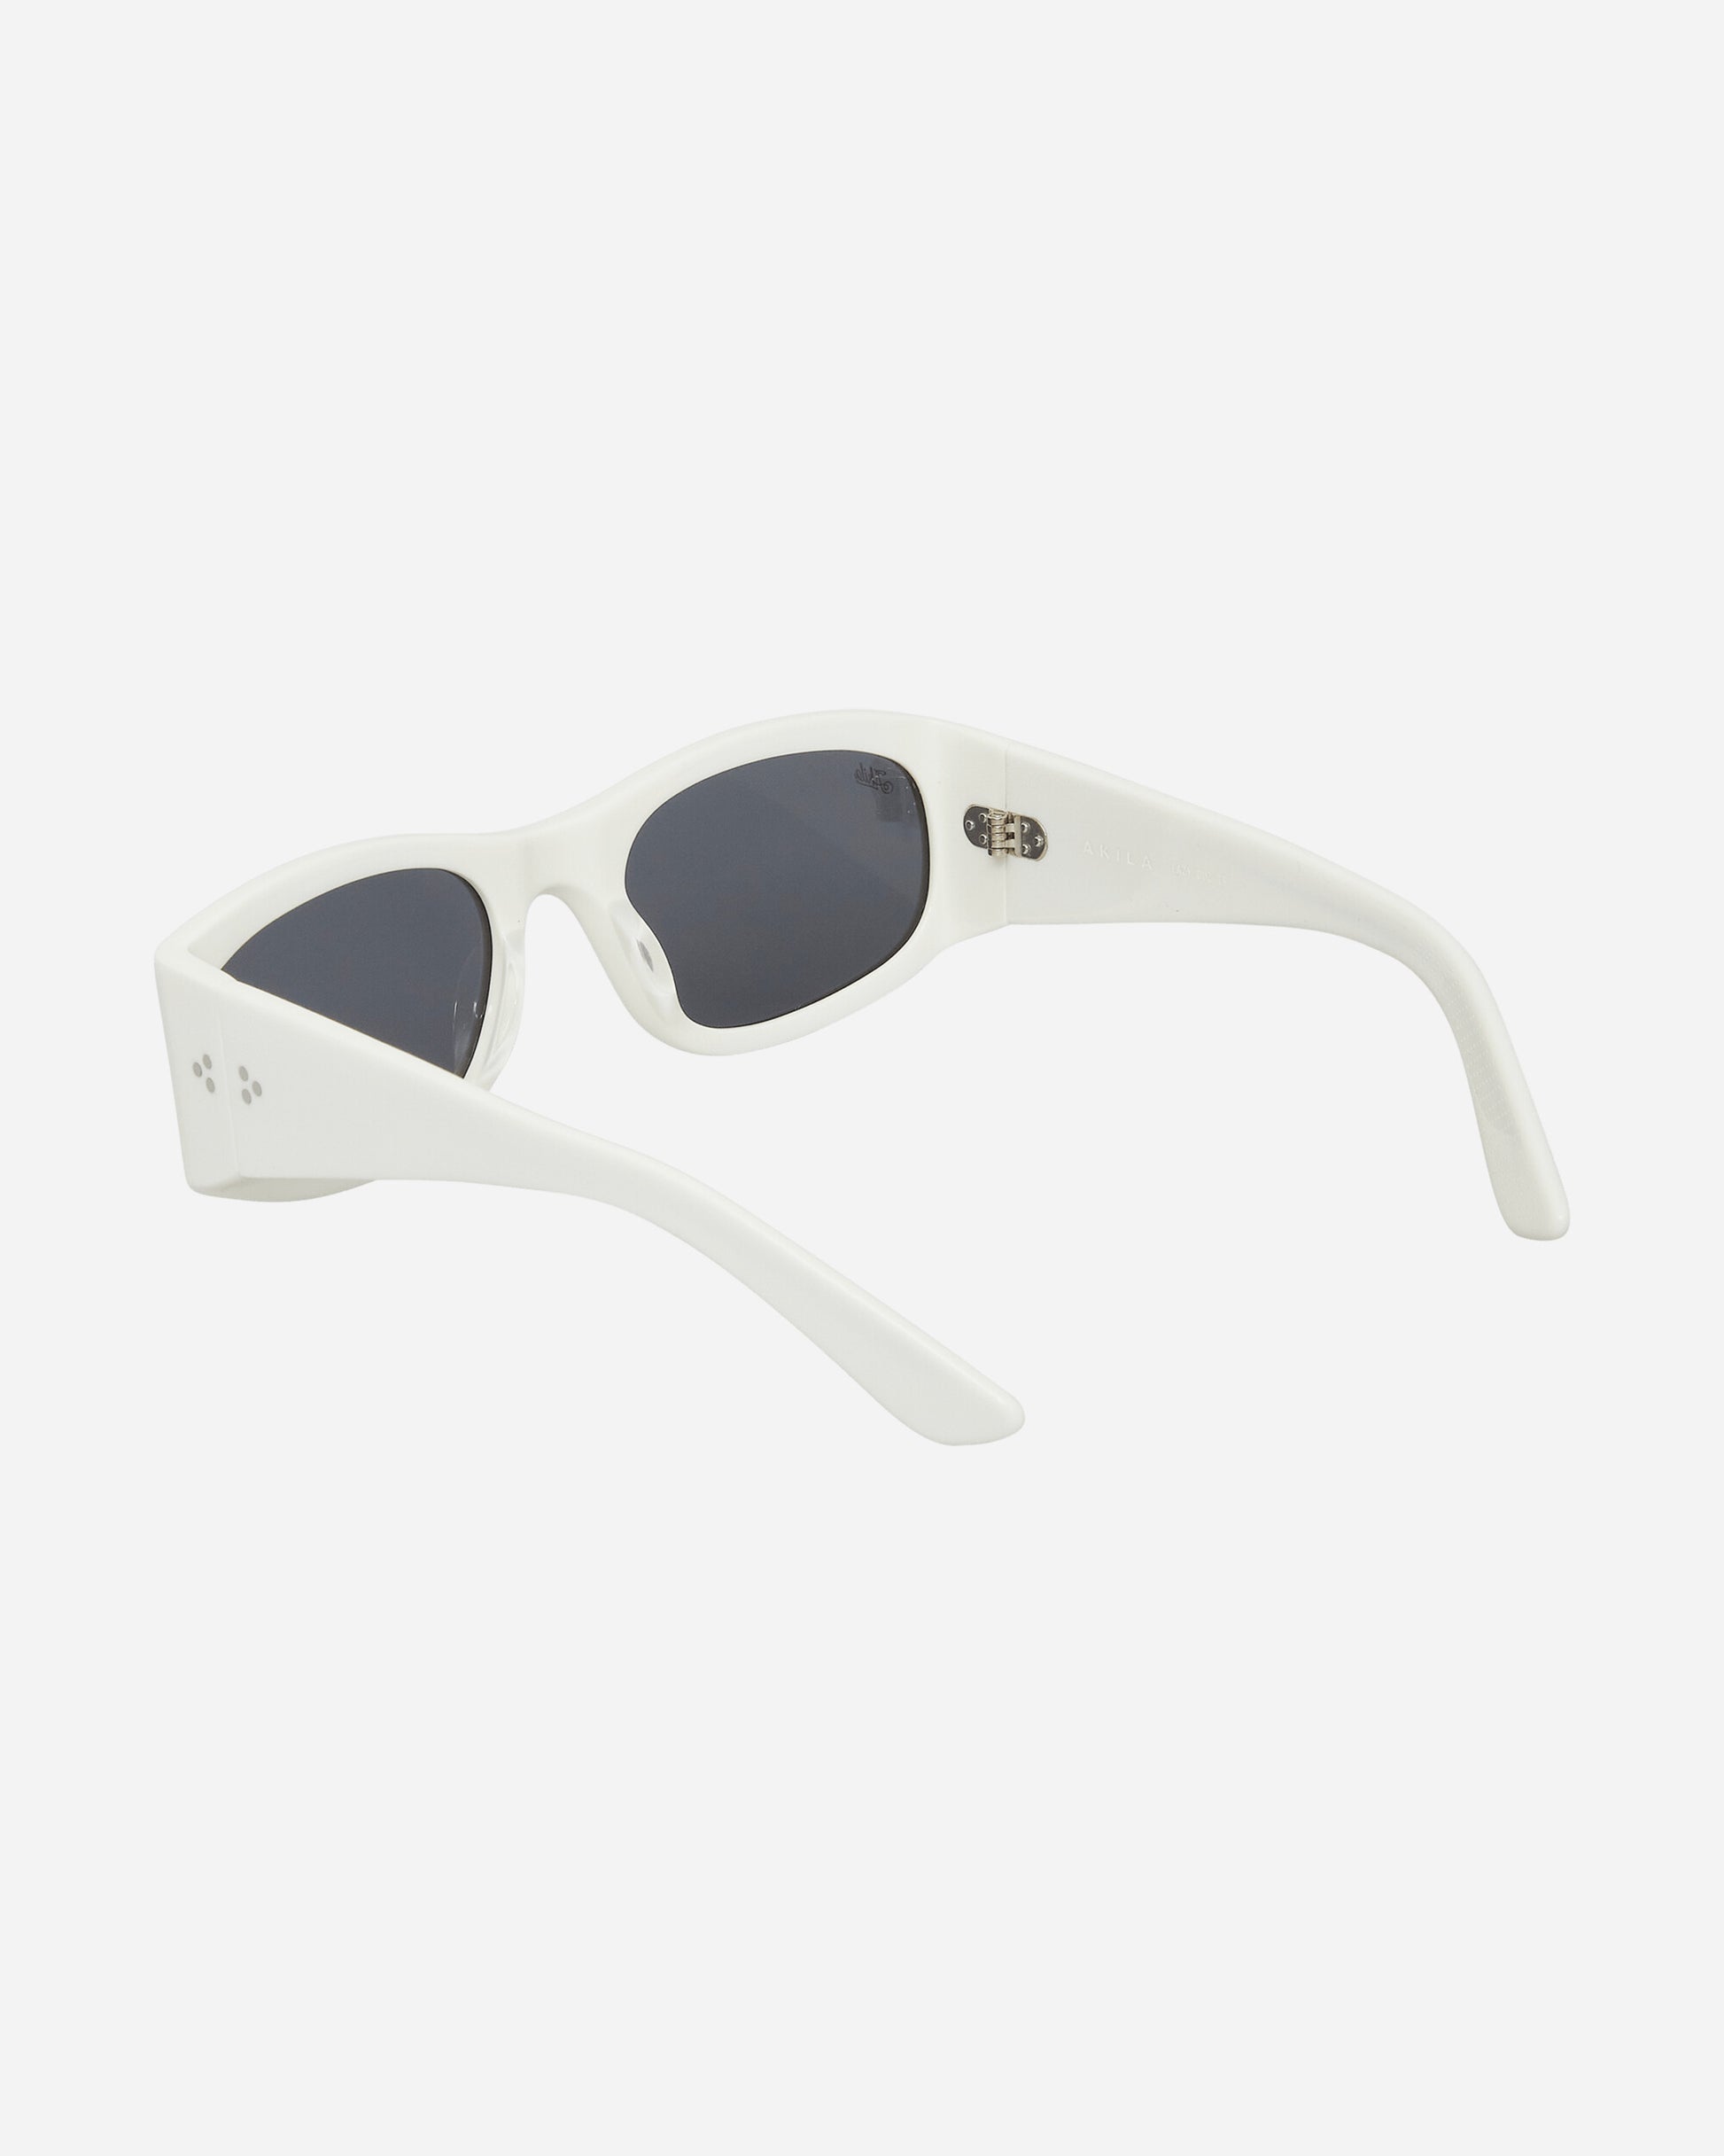 AKILA Eazy White/Black Eyewear Sunglasses 213409 01